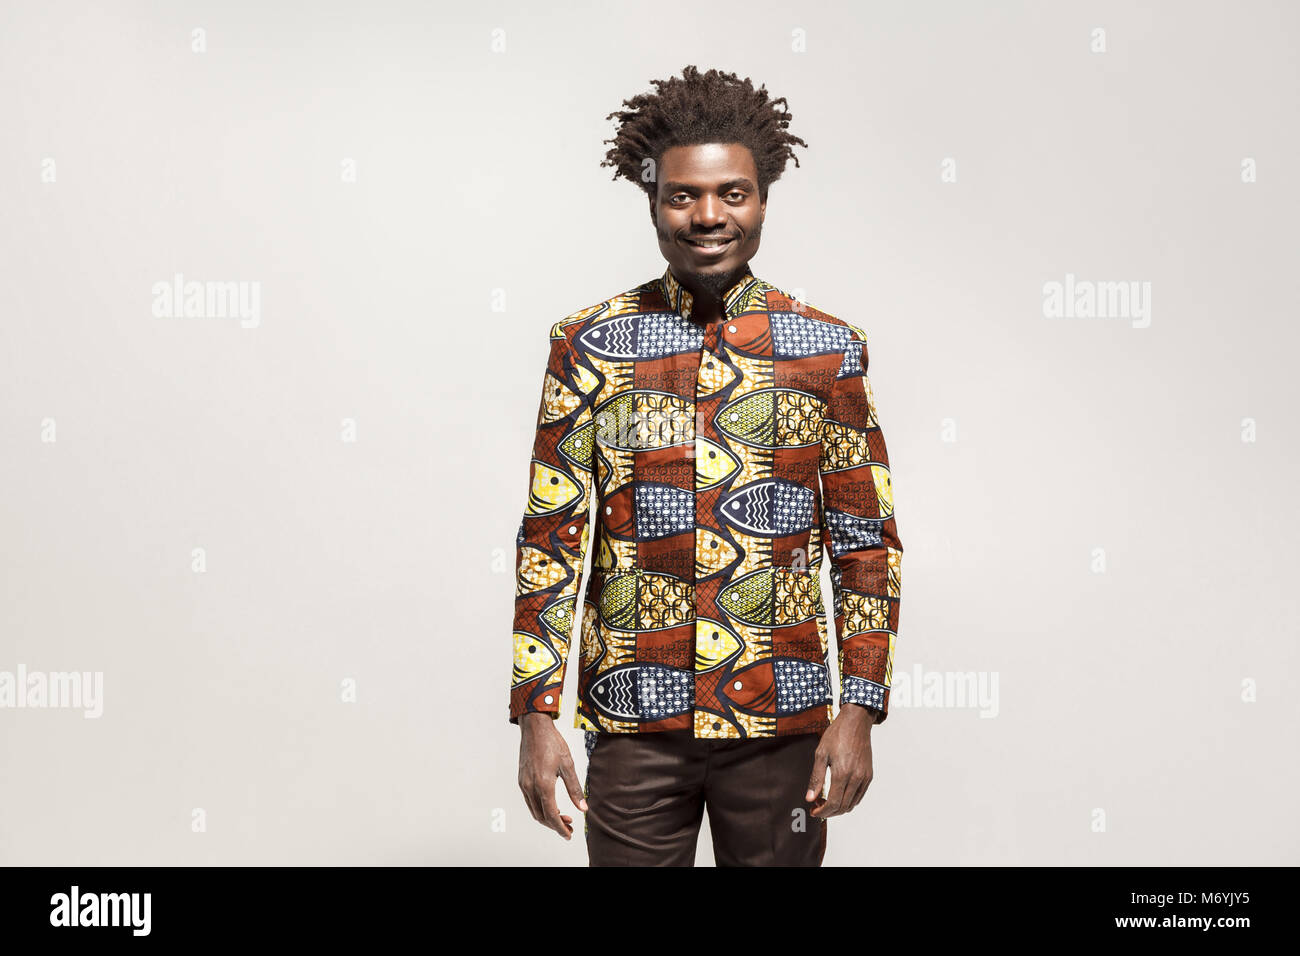 La felicità uomo africana in abiti tradizionali sorriso toothy. Indoor, isolata su uno sfondo grigio Foto Stock